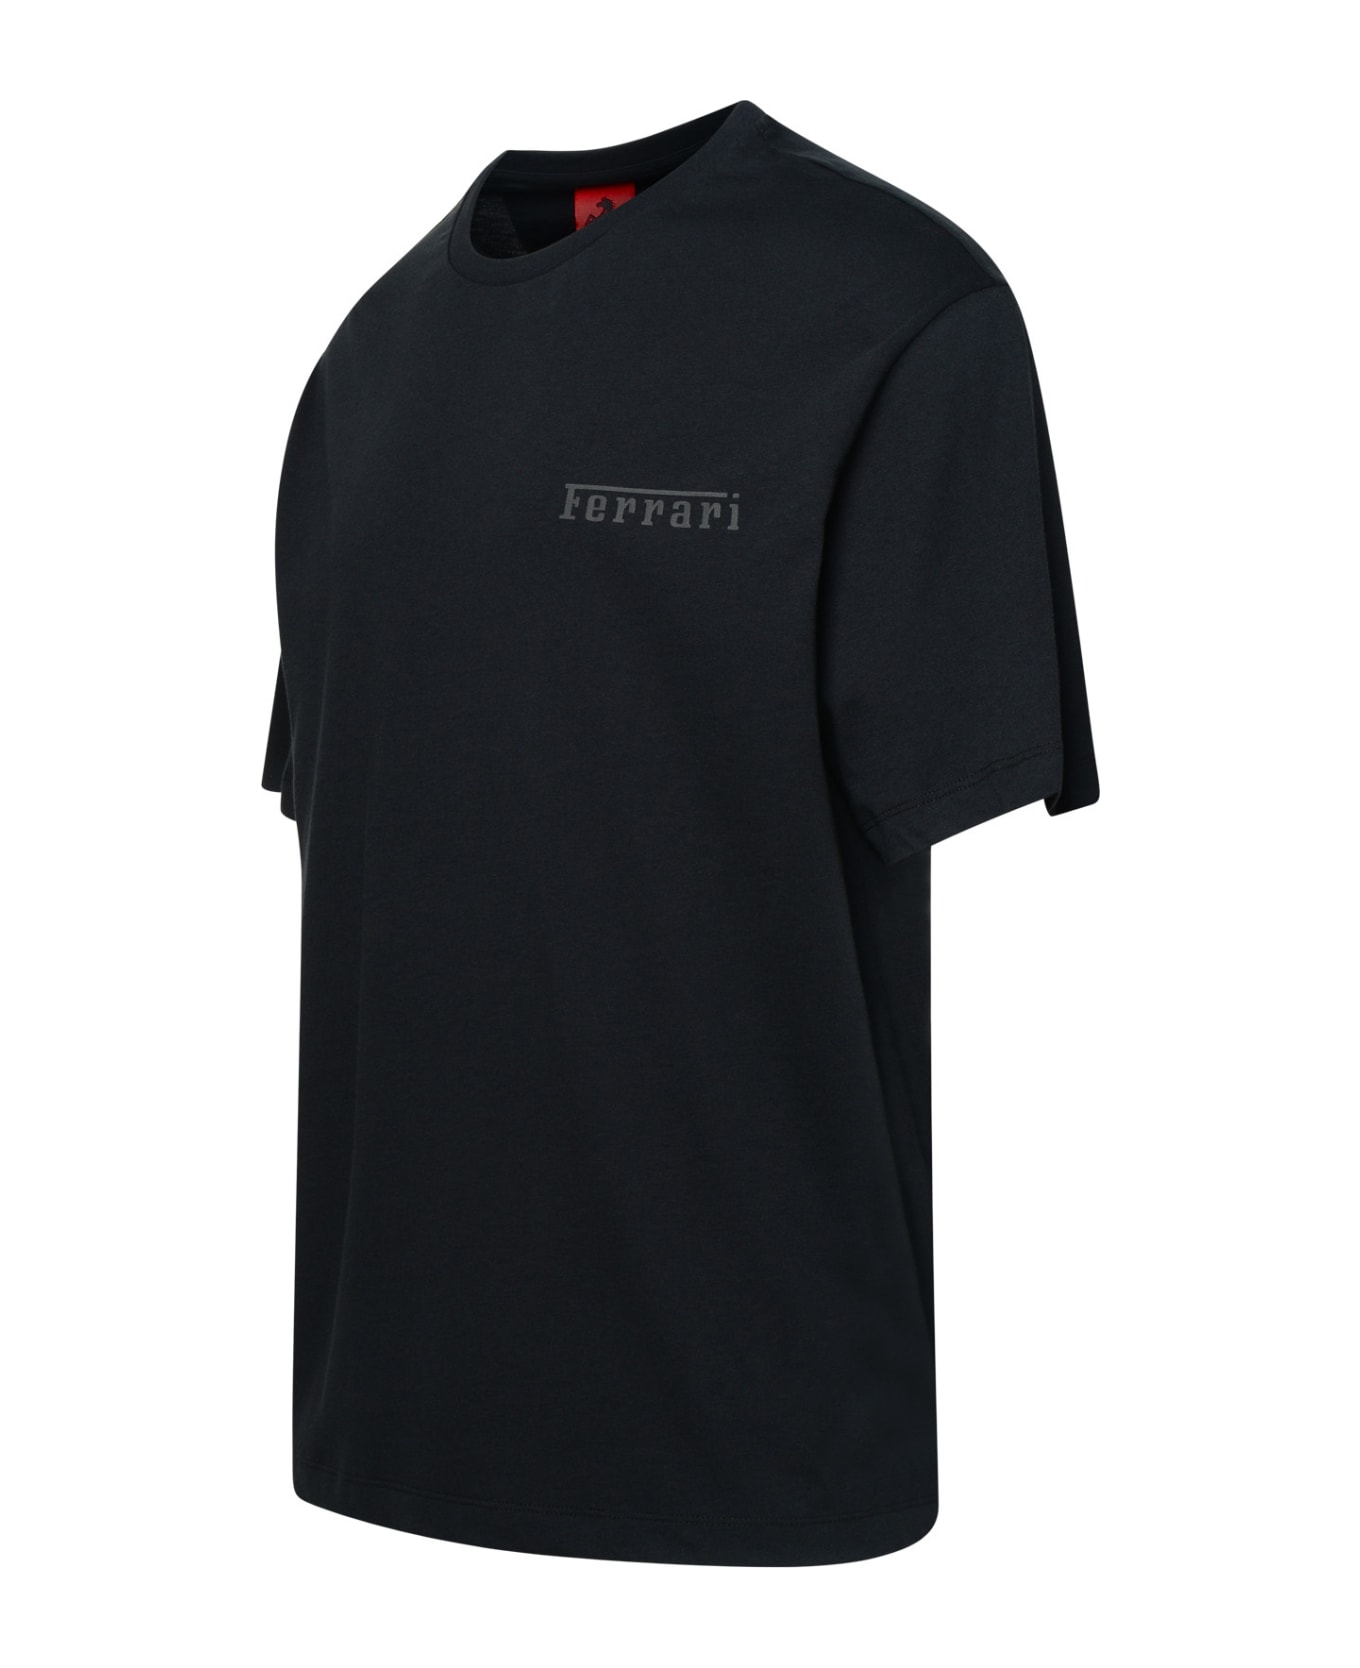 Ferrari Black Cotton T-shirt - BLACK